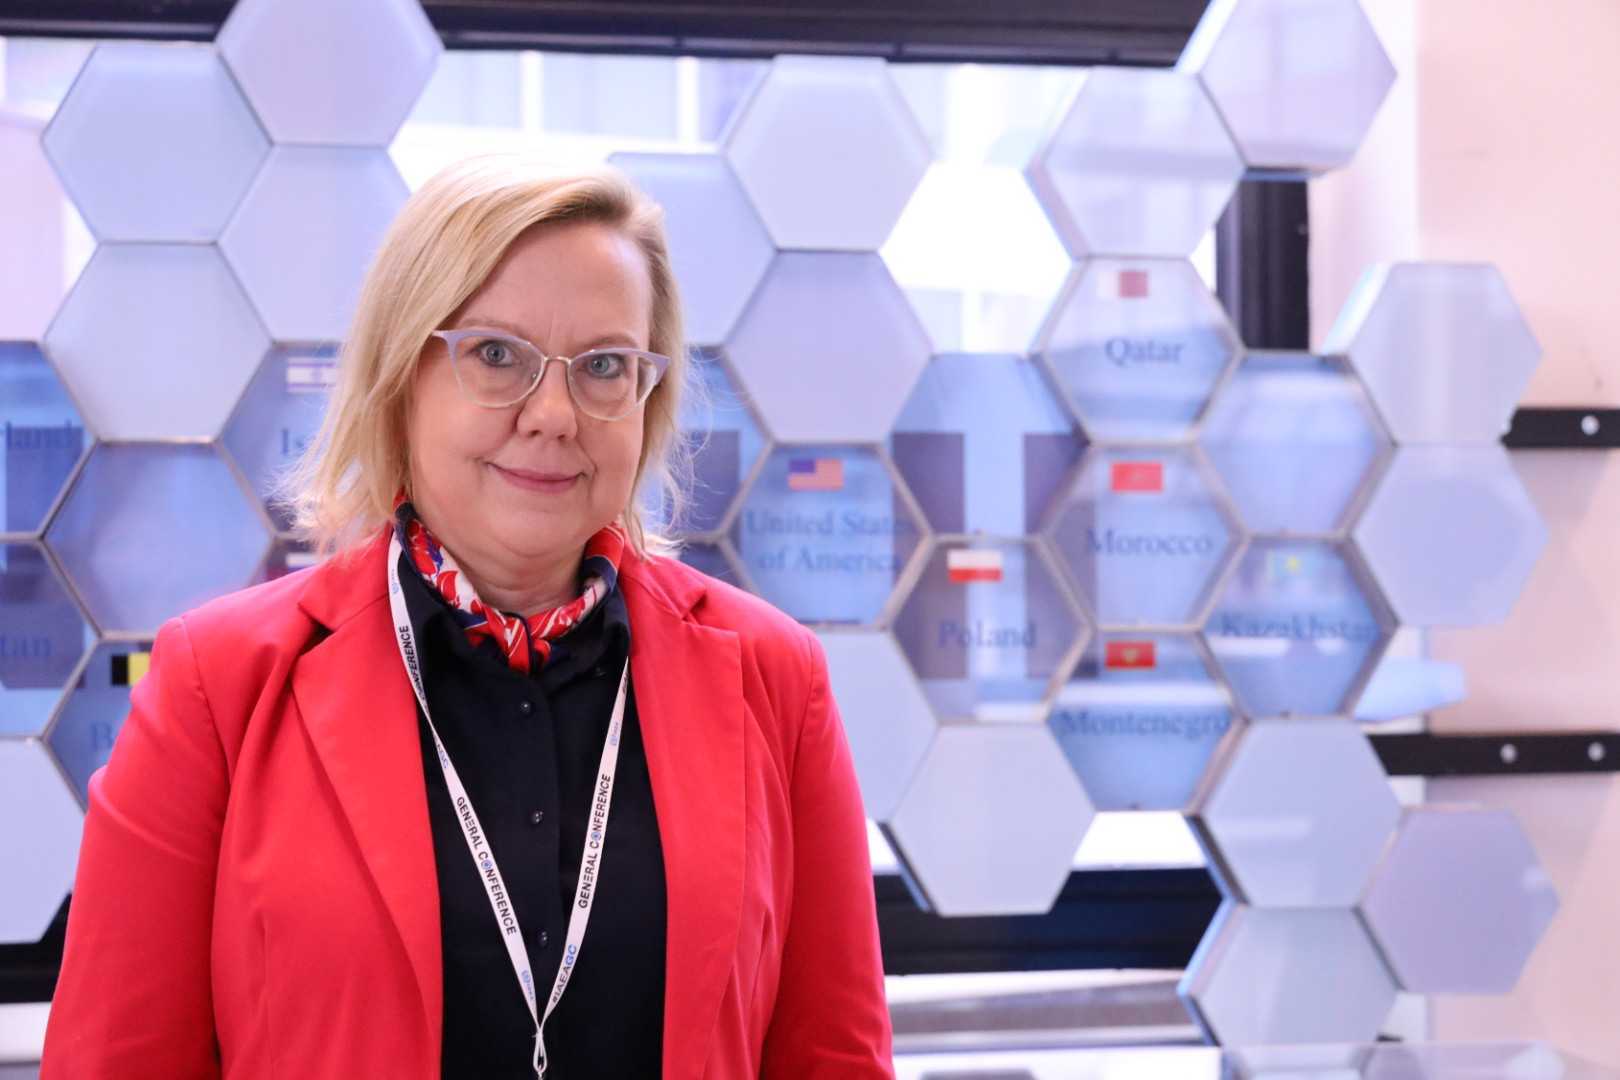 Minister Anna Moskwa na 66. konferencji generalnej Międzynarodowej Agencji Energii Atomowej